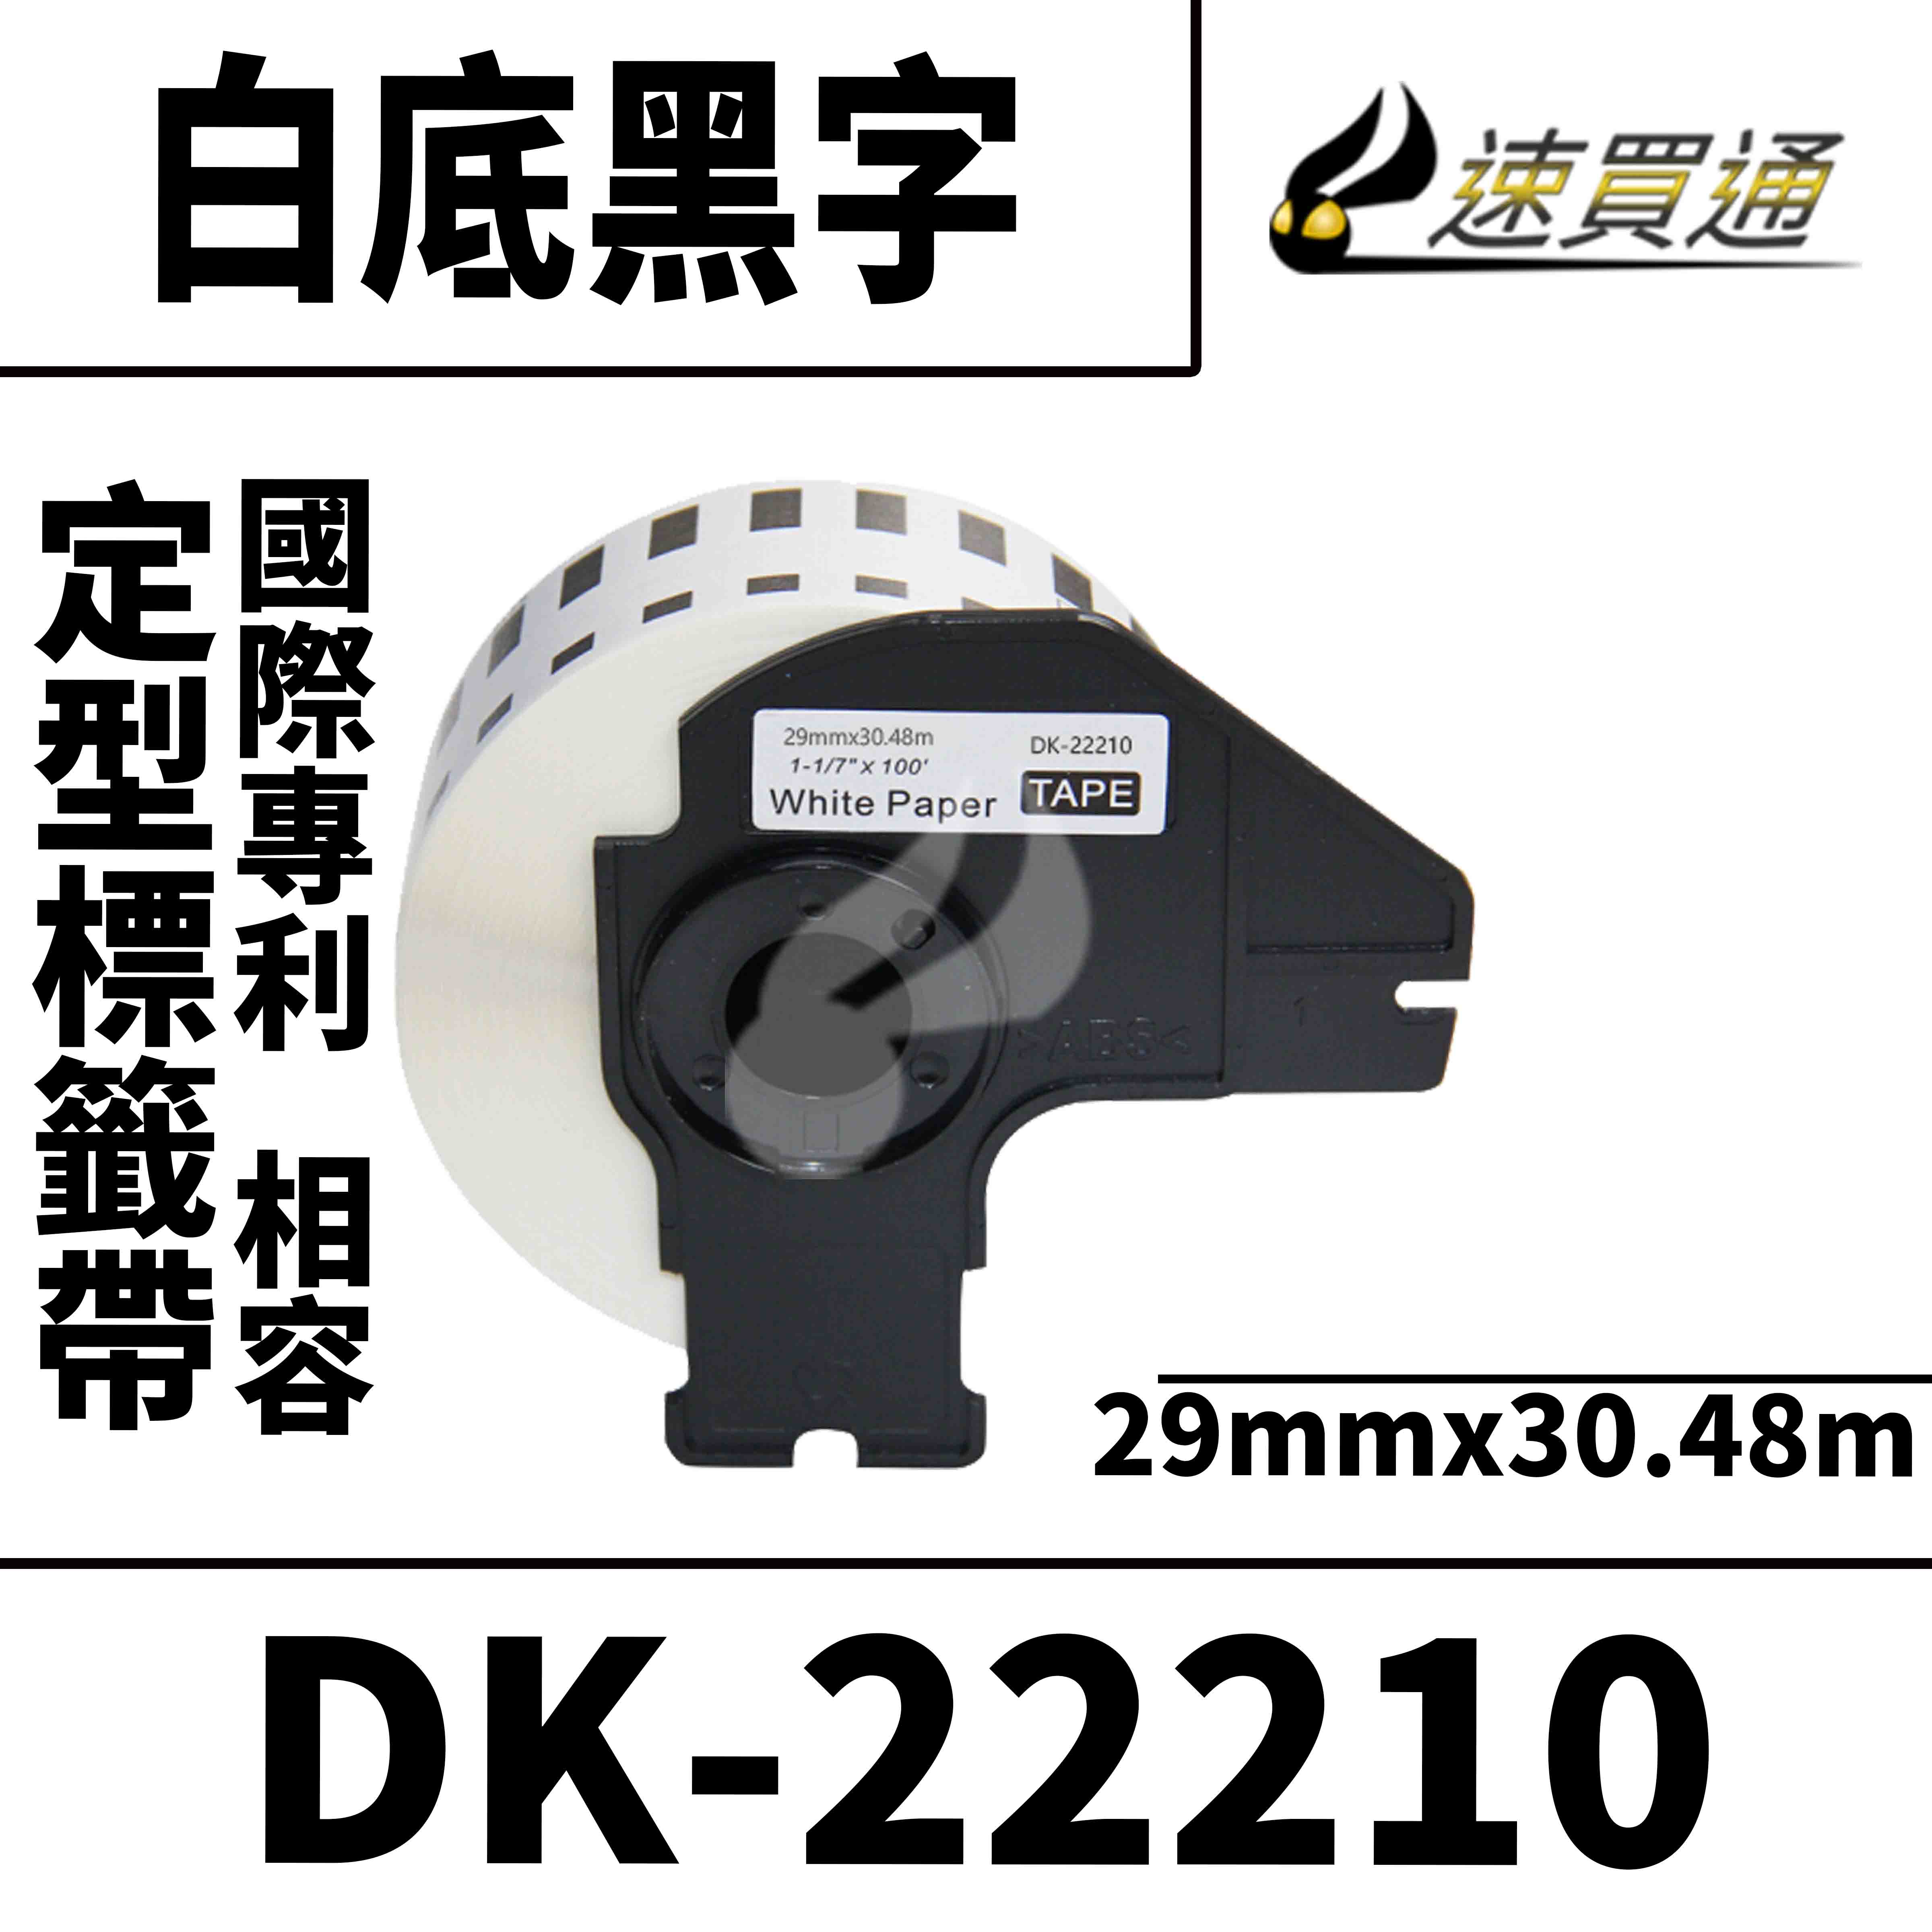 【速買通】Brother DK-22210/白底黑字/29mmx30.48m 相容定型標籤帶